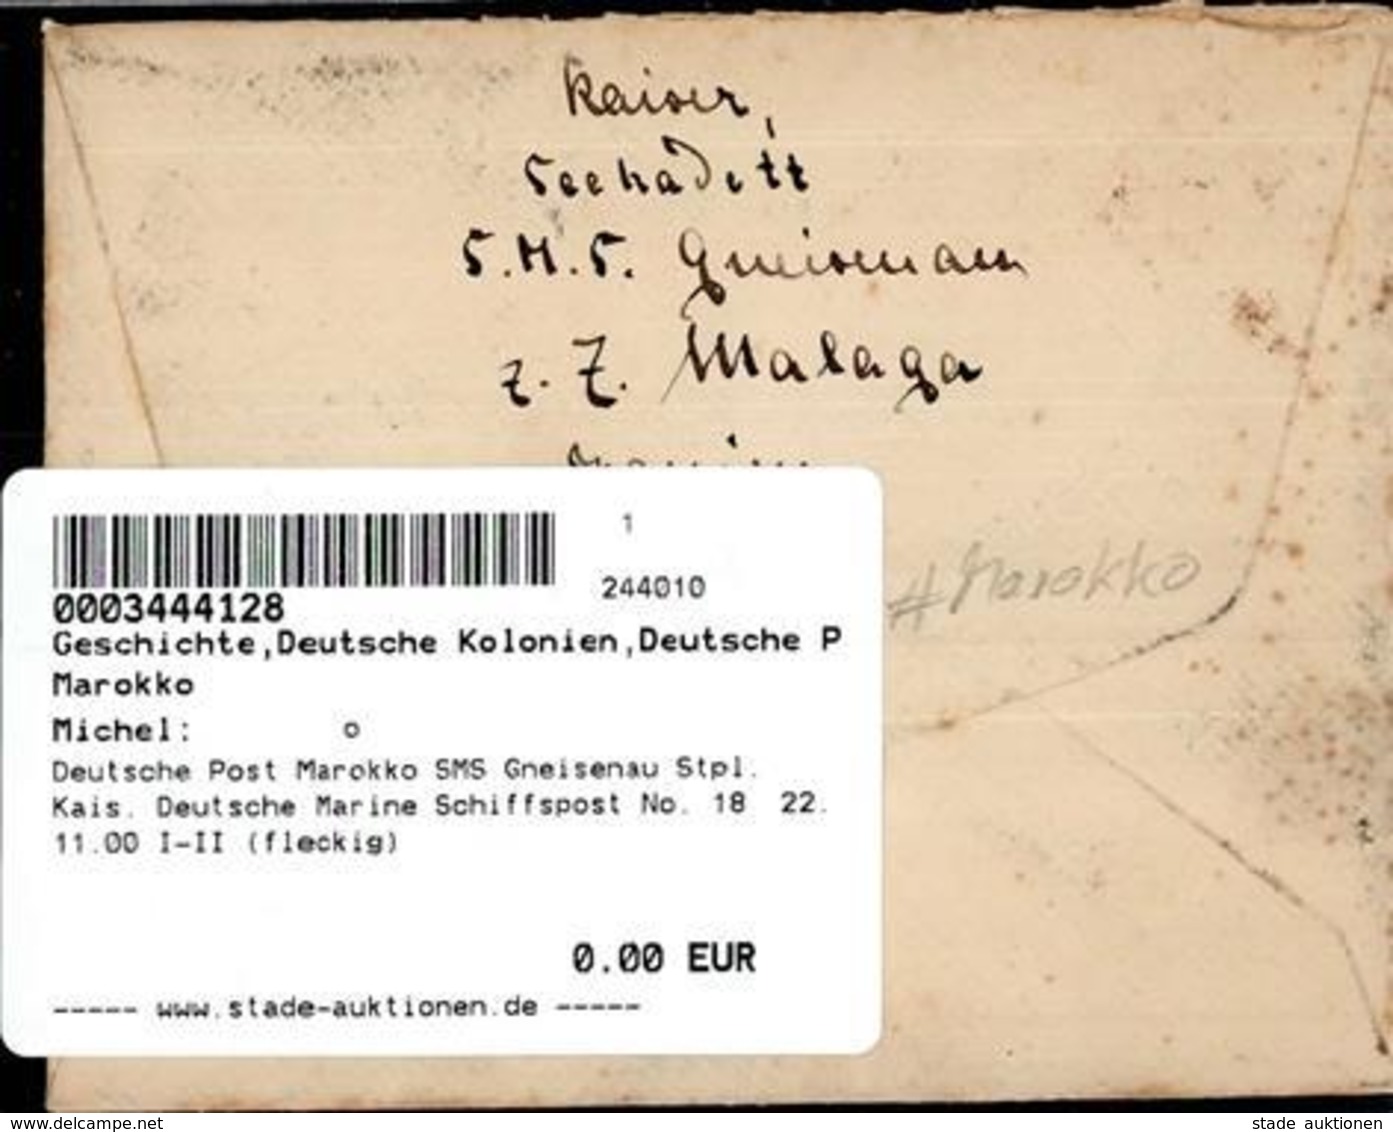 Deutsche Post Marokko SMS Gneisenau Stpl. Kais. Deutsche Marine Schiffspost No. 18  22.11.00 I-II (fleckig) - Afrique